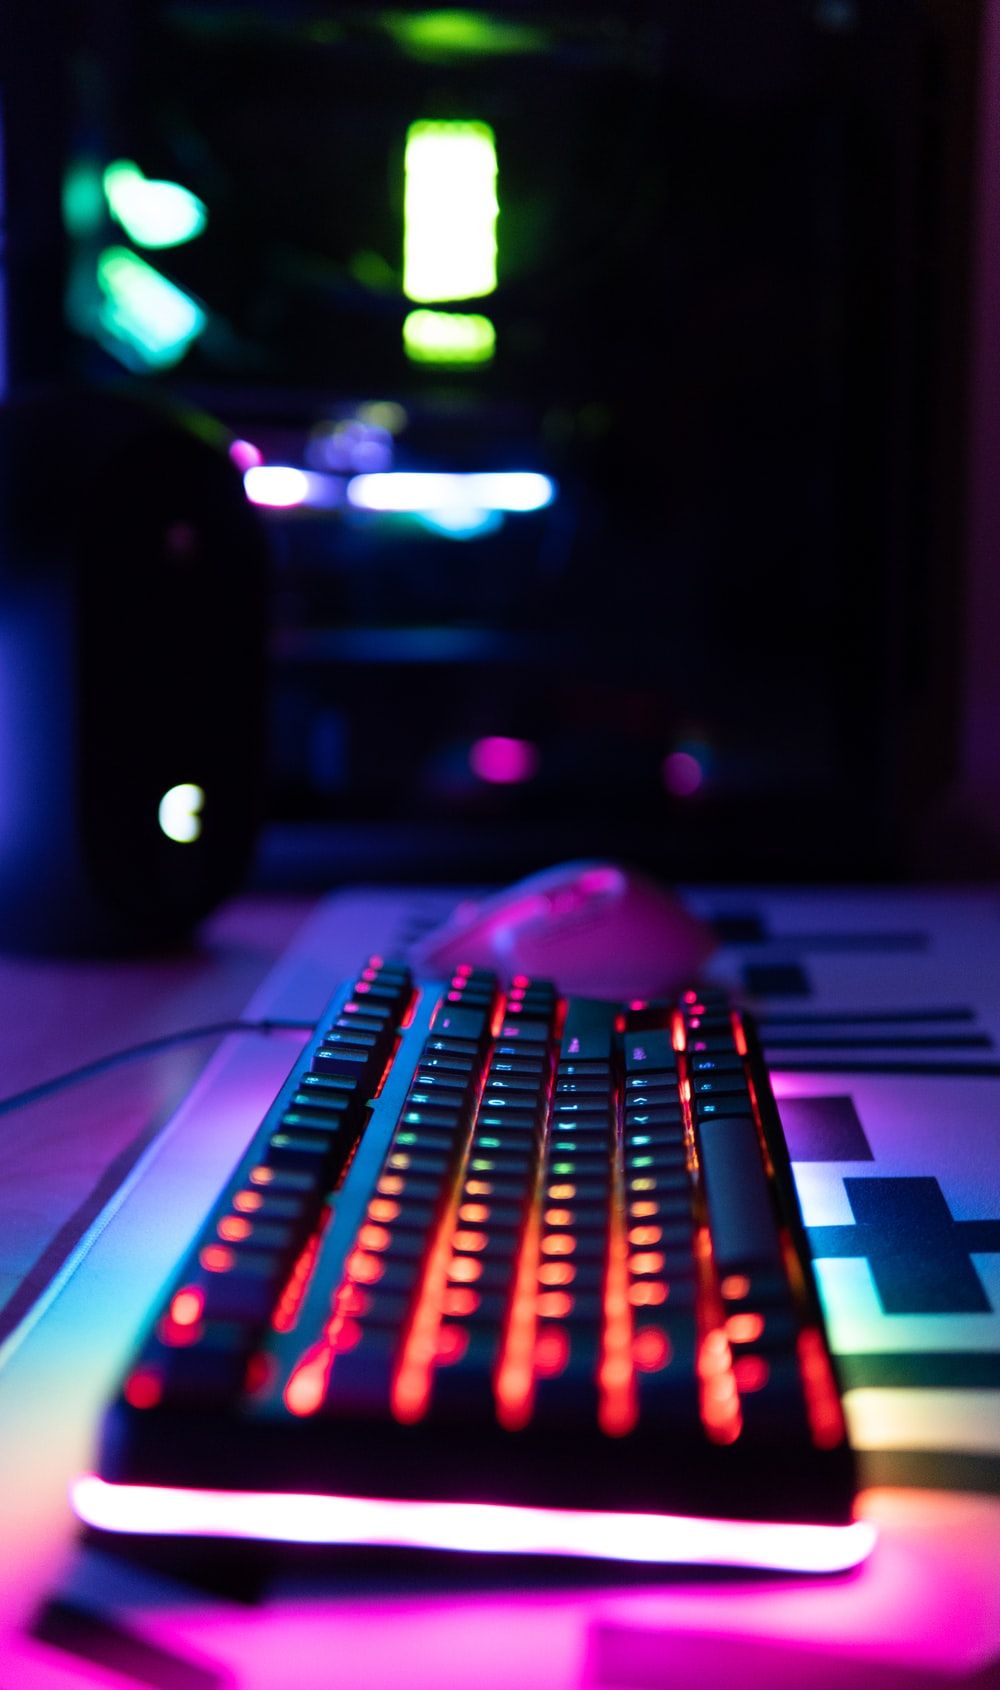 Bàn phím RGB là sự lựa chọn tuyệt vời cho các game thủ cũng như người dùng laptop chuyên nghiệp. Với khả năng thay đổi màu sắc linh hoạt, bạn hoàn toàn có thể thích nghi để tạo nên không gian làm việc riêng biệt cho mình.